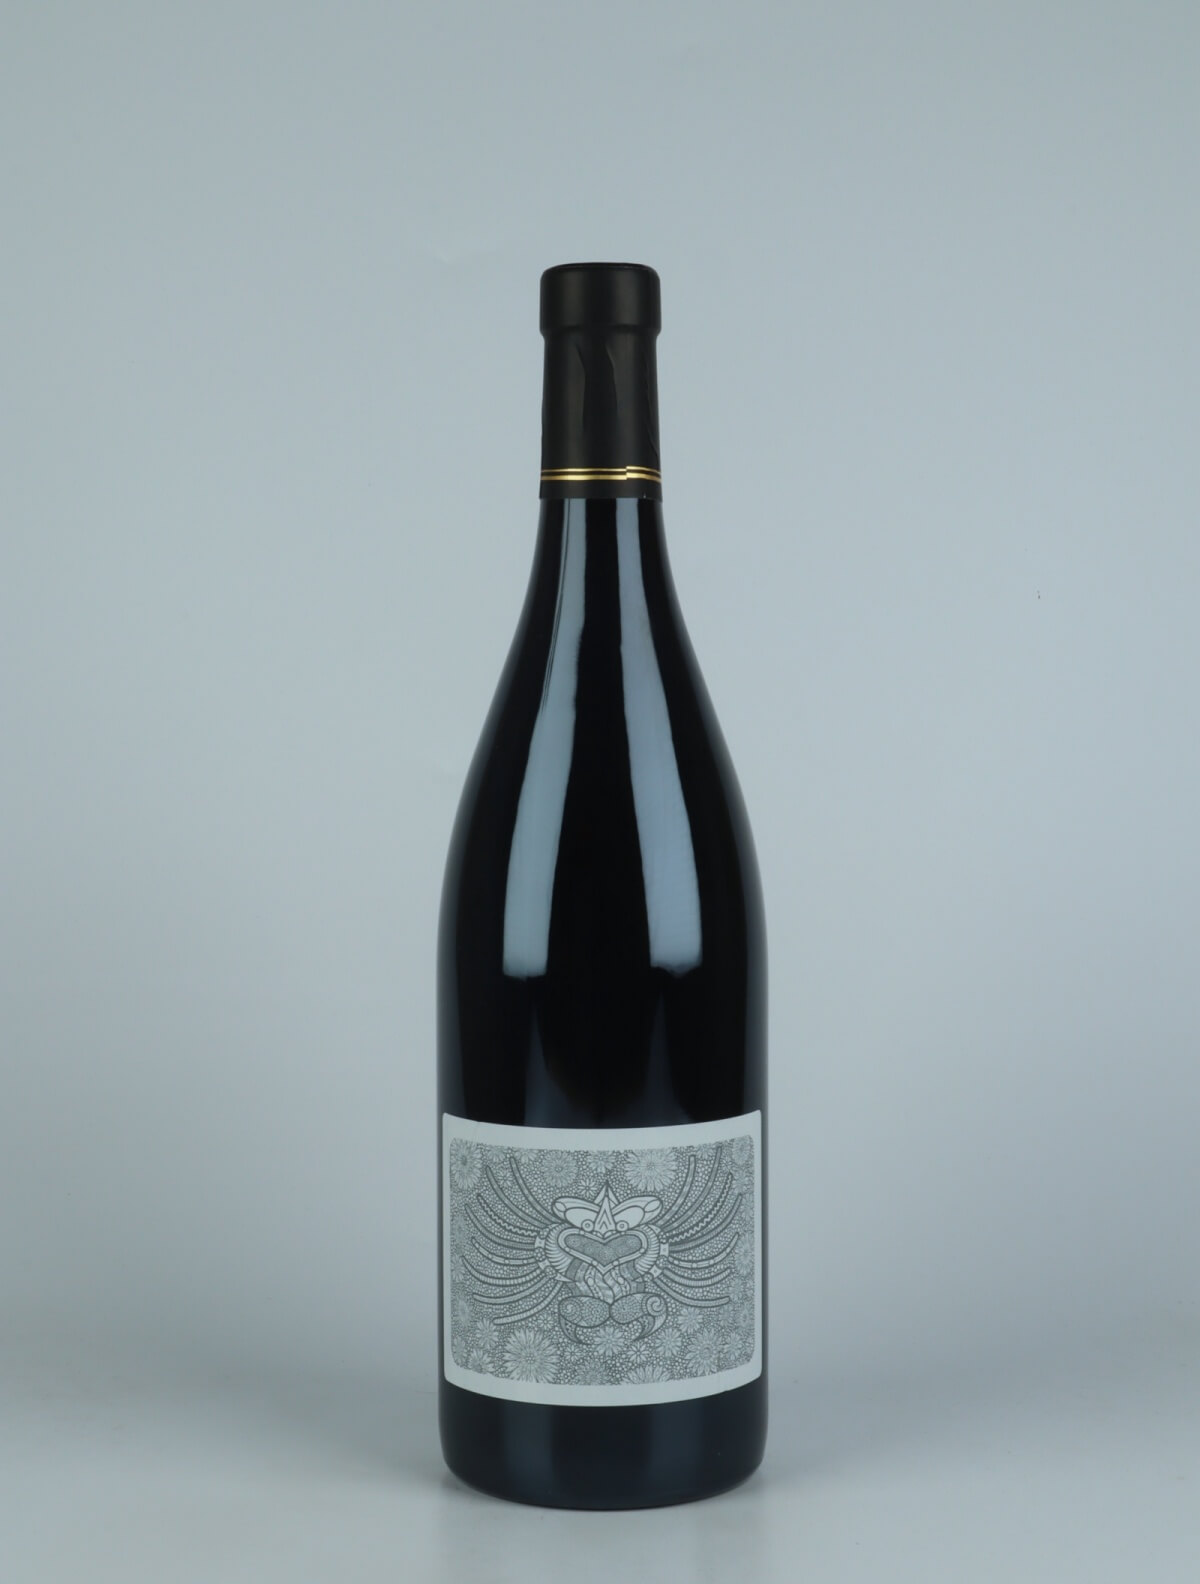 A bottle 2021 Colère de Zeus - Rouge Red wine from Julien Courtois, Loire in France